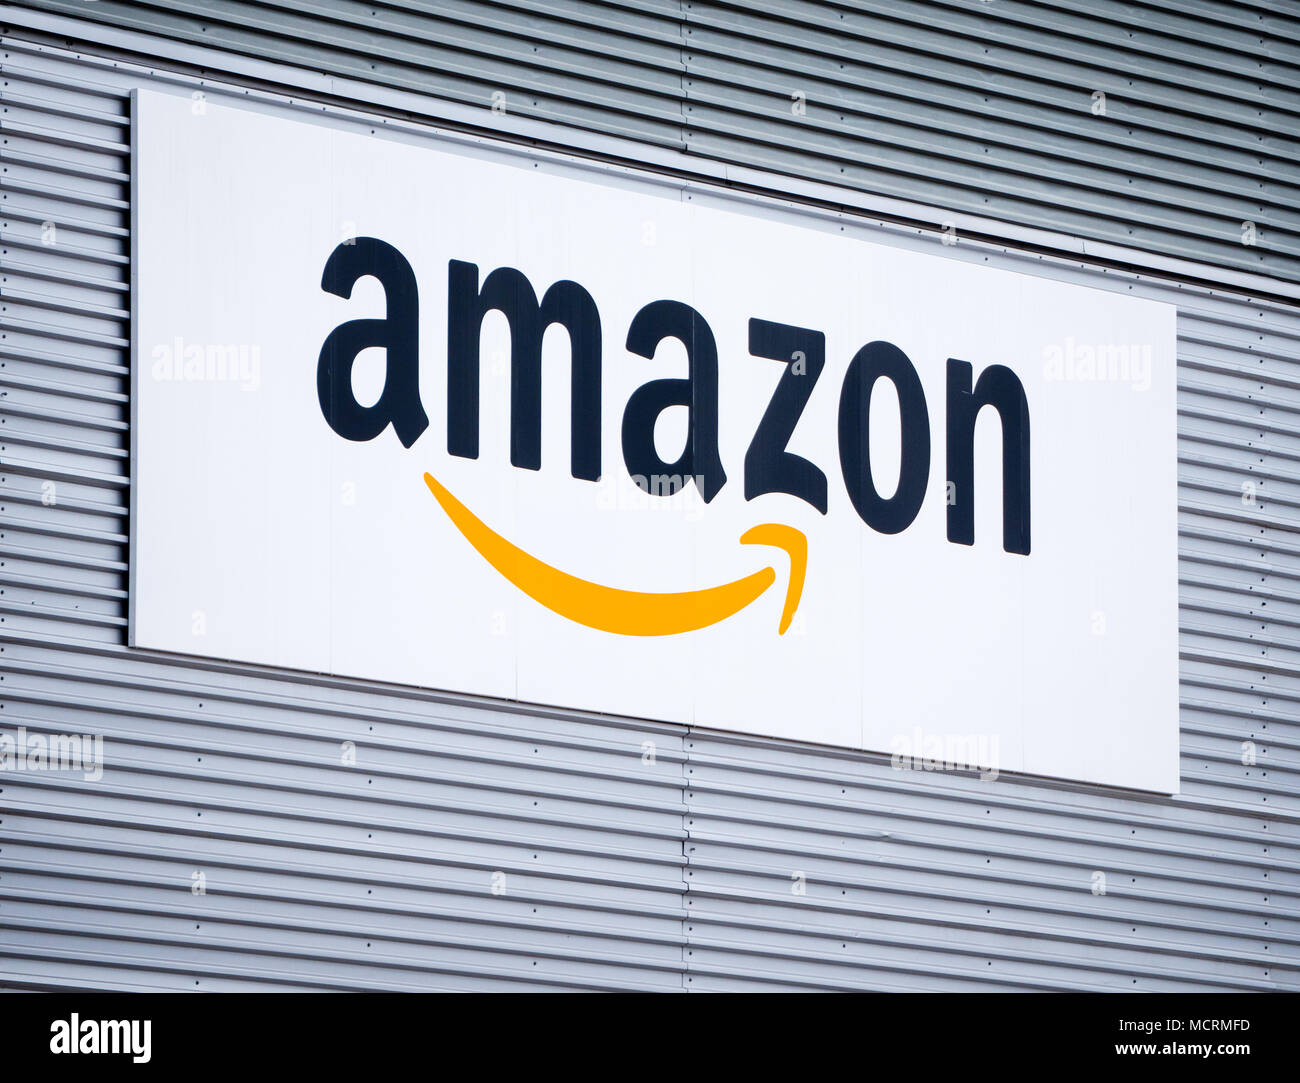 Logistica di Amazon, un centro di distribuzione, Theale Reading, Berkshire, Inghilterra, Regno Unito,GB. Foto Stock